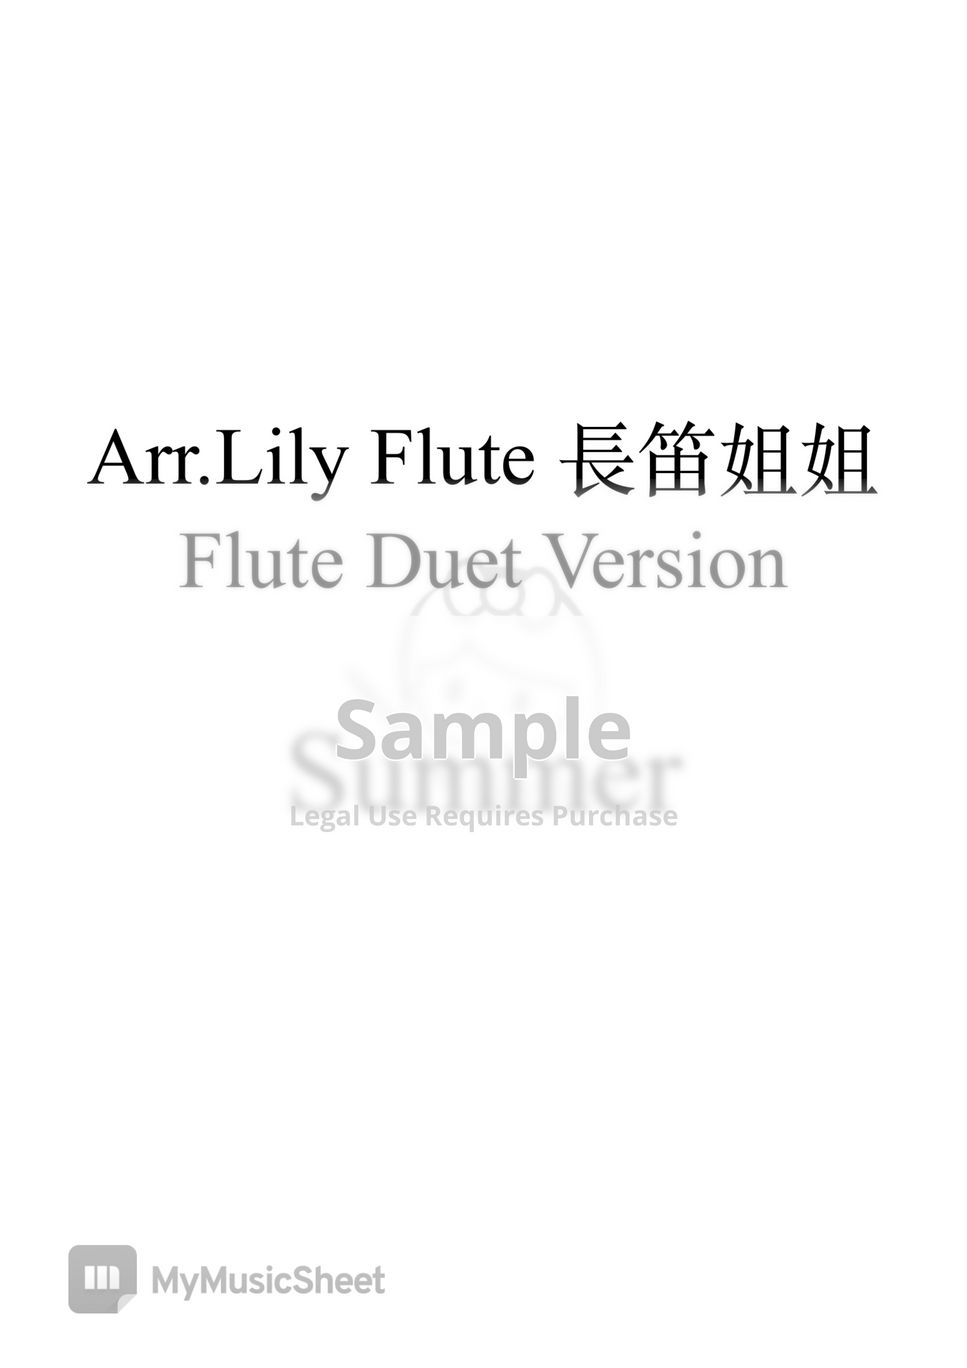 久石讓 - 菊次郎的夏天 (Duet Version) by Lily Flute 長笛姐姐